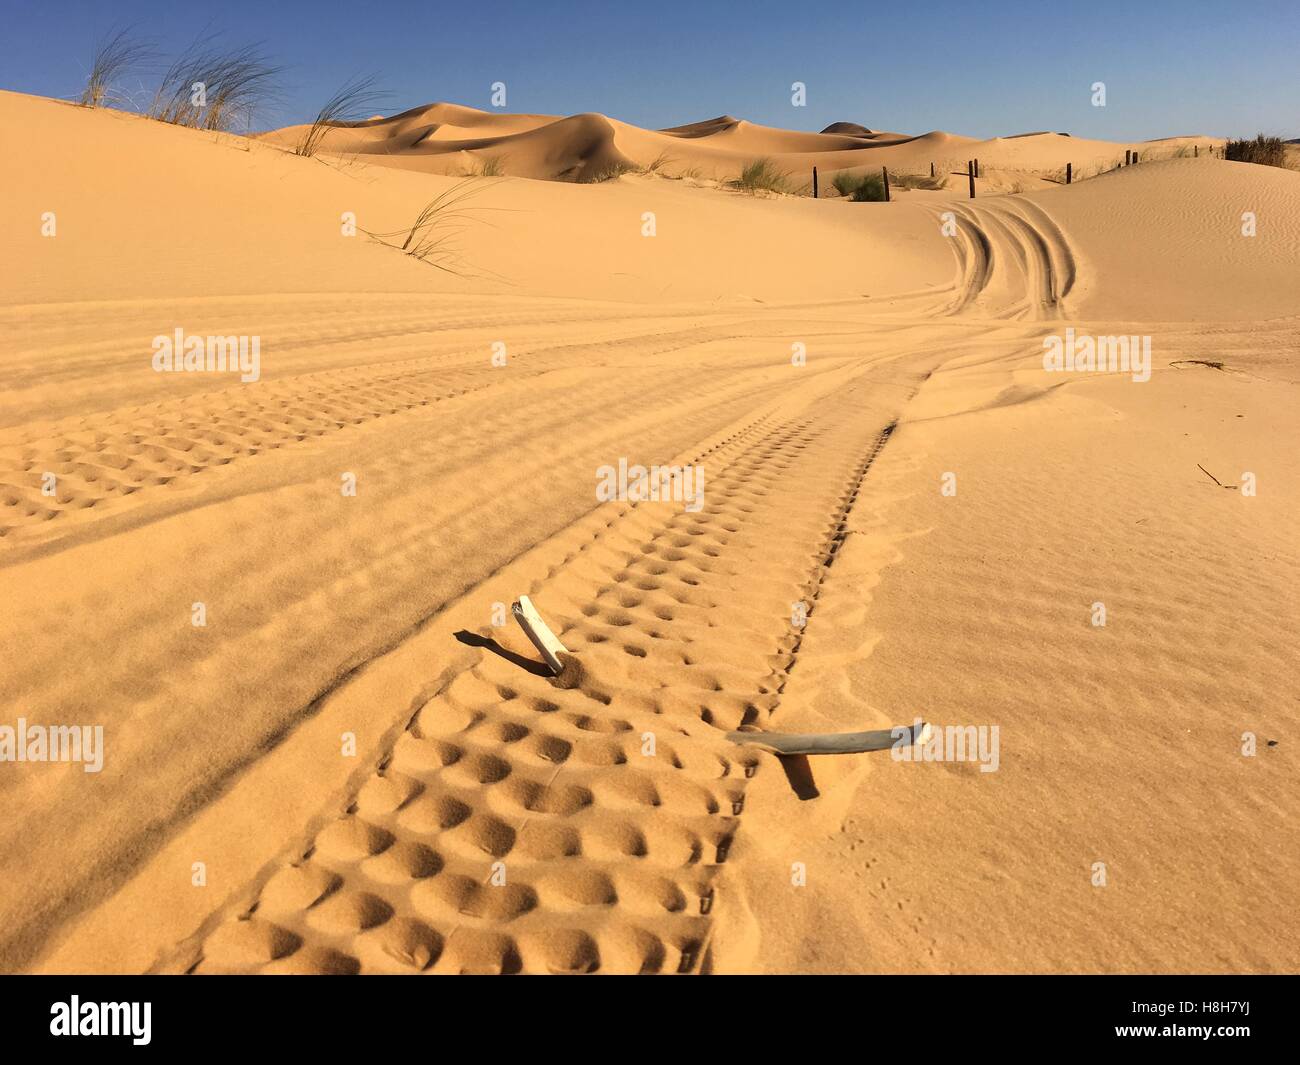 Os de chameau au désert de l'Afrique du Nord, l'Algérie Béchar Taghit de sable Banque D'Images